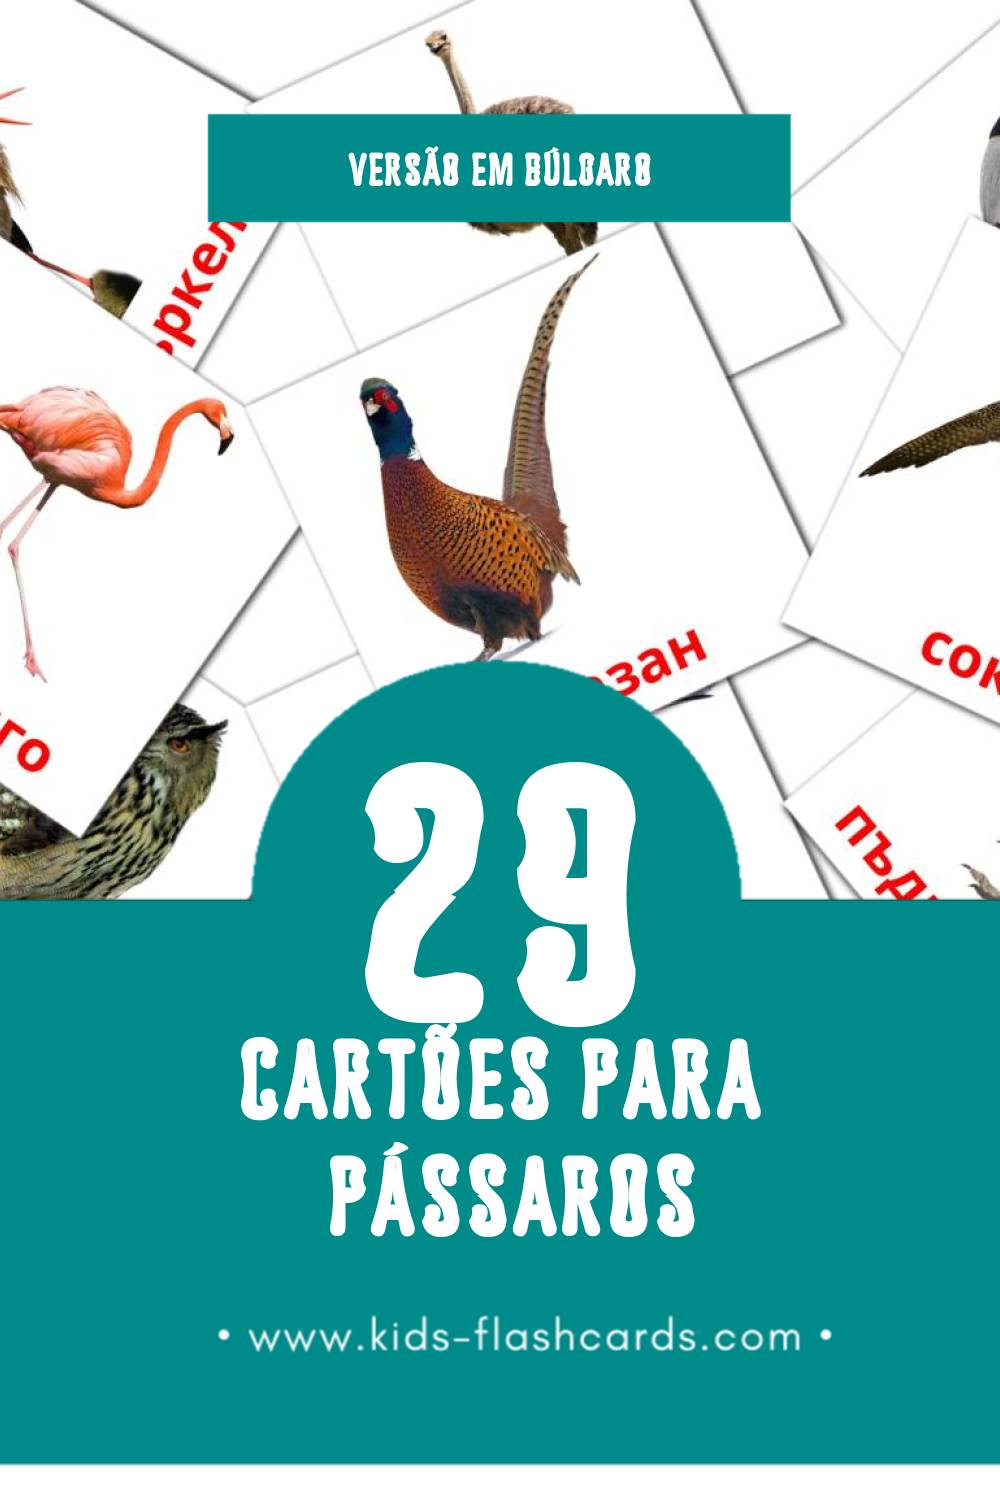 Flashcards de Птици Visuais para Toddlers (29 cartões em Búlgaro)